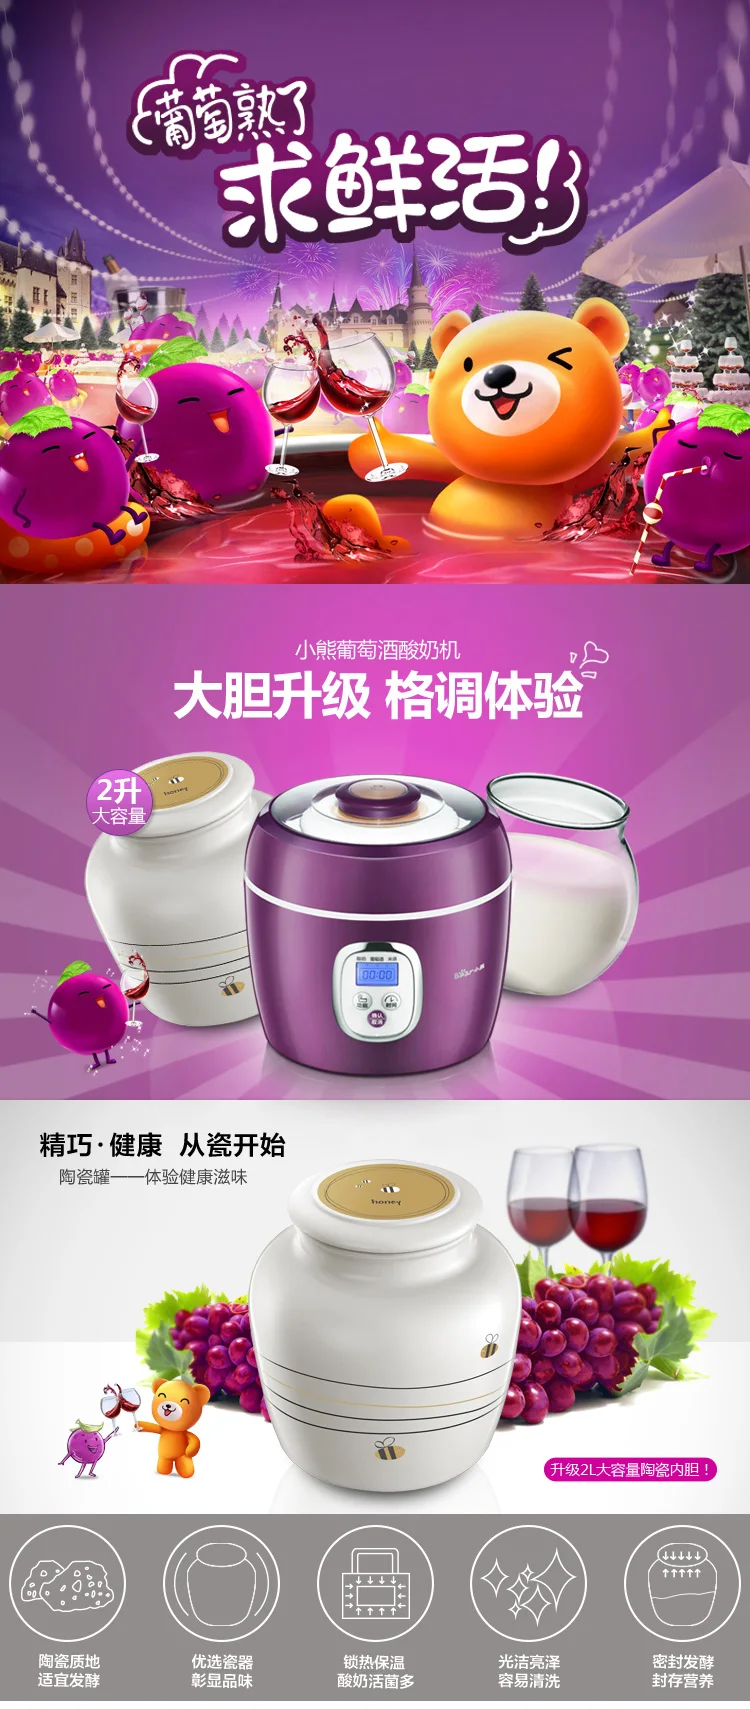 Chinaguangdong Bear SNJ-580 для виноградного вина рисовое вино leben машина бытовой йогурт 2L 110-220-240v